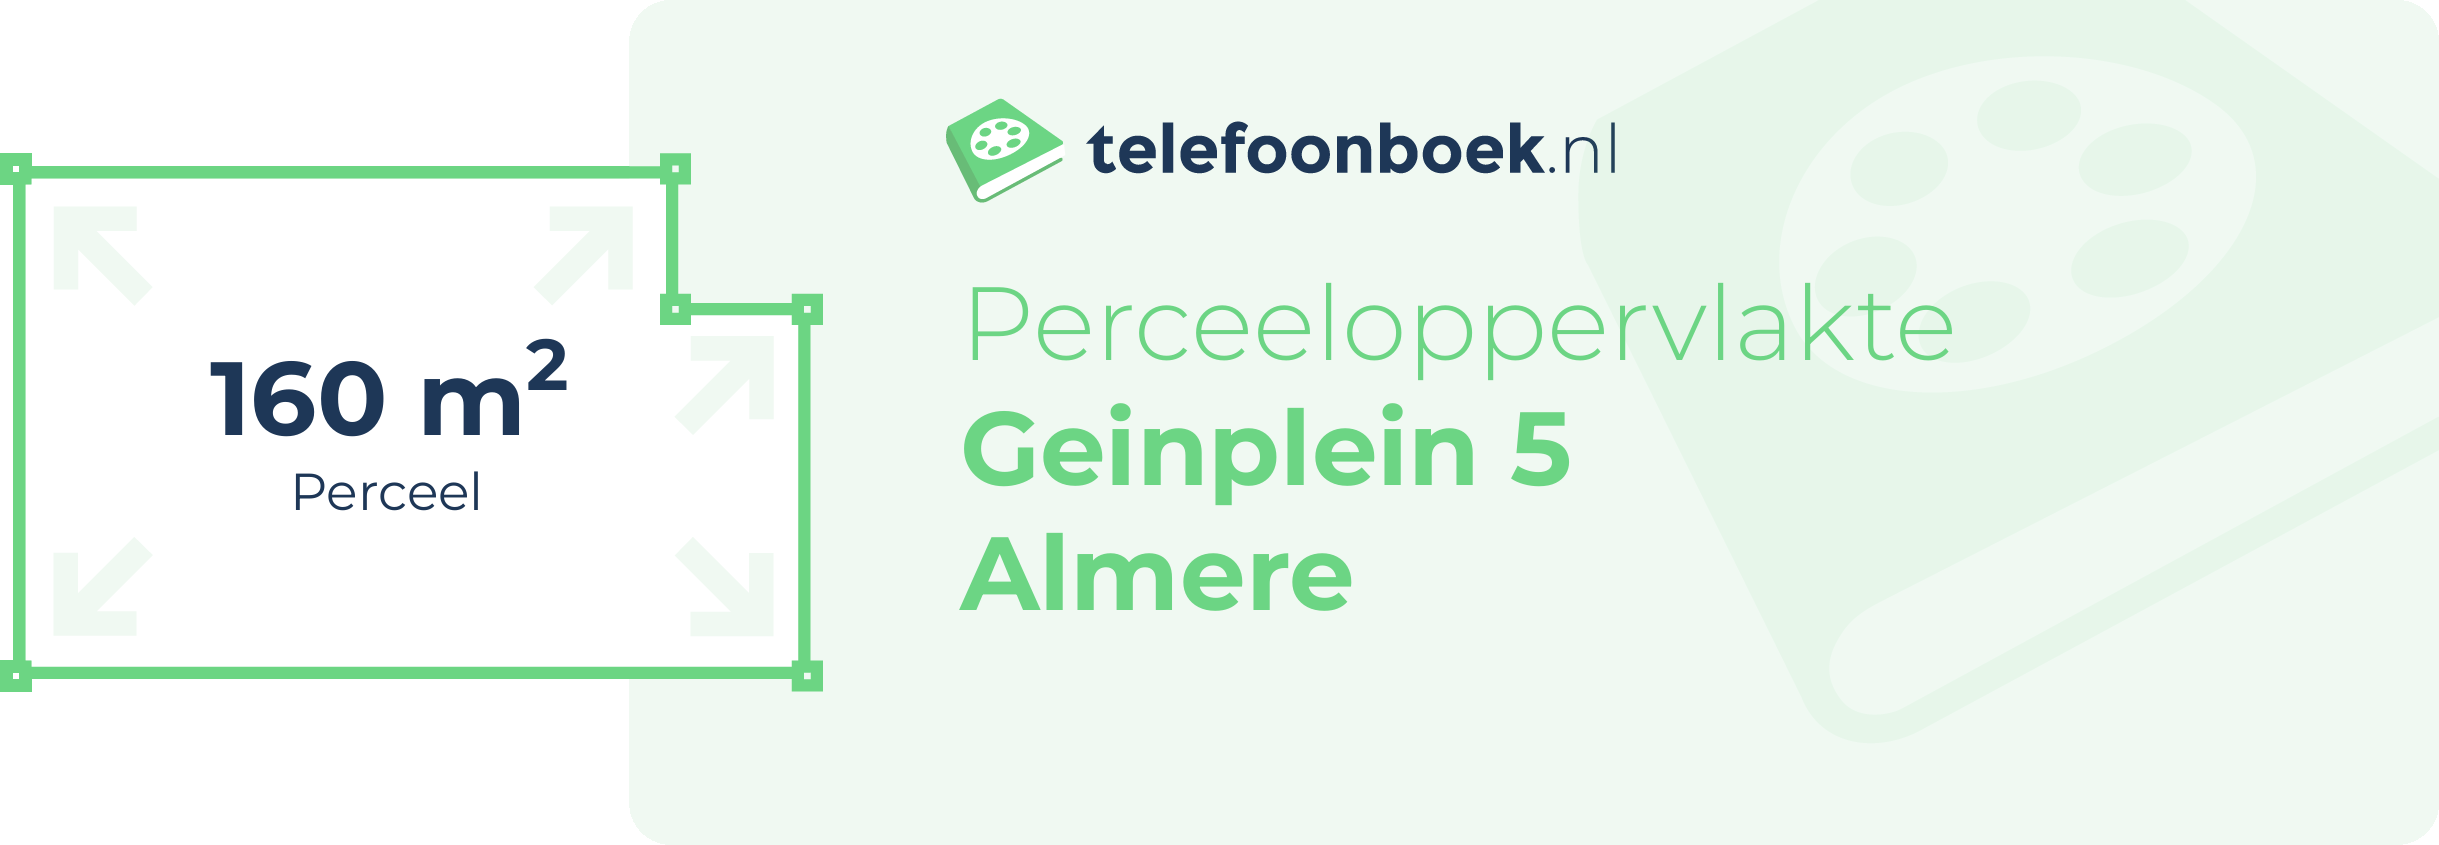 Perceeloppervlakte Geinplein 5 Almere